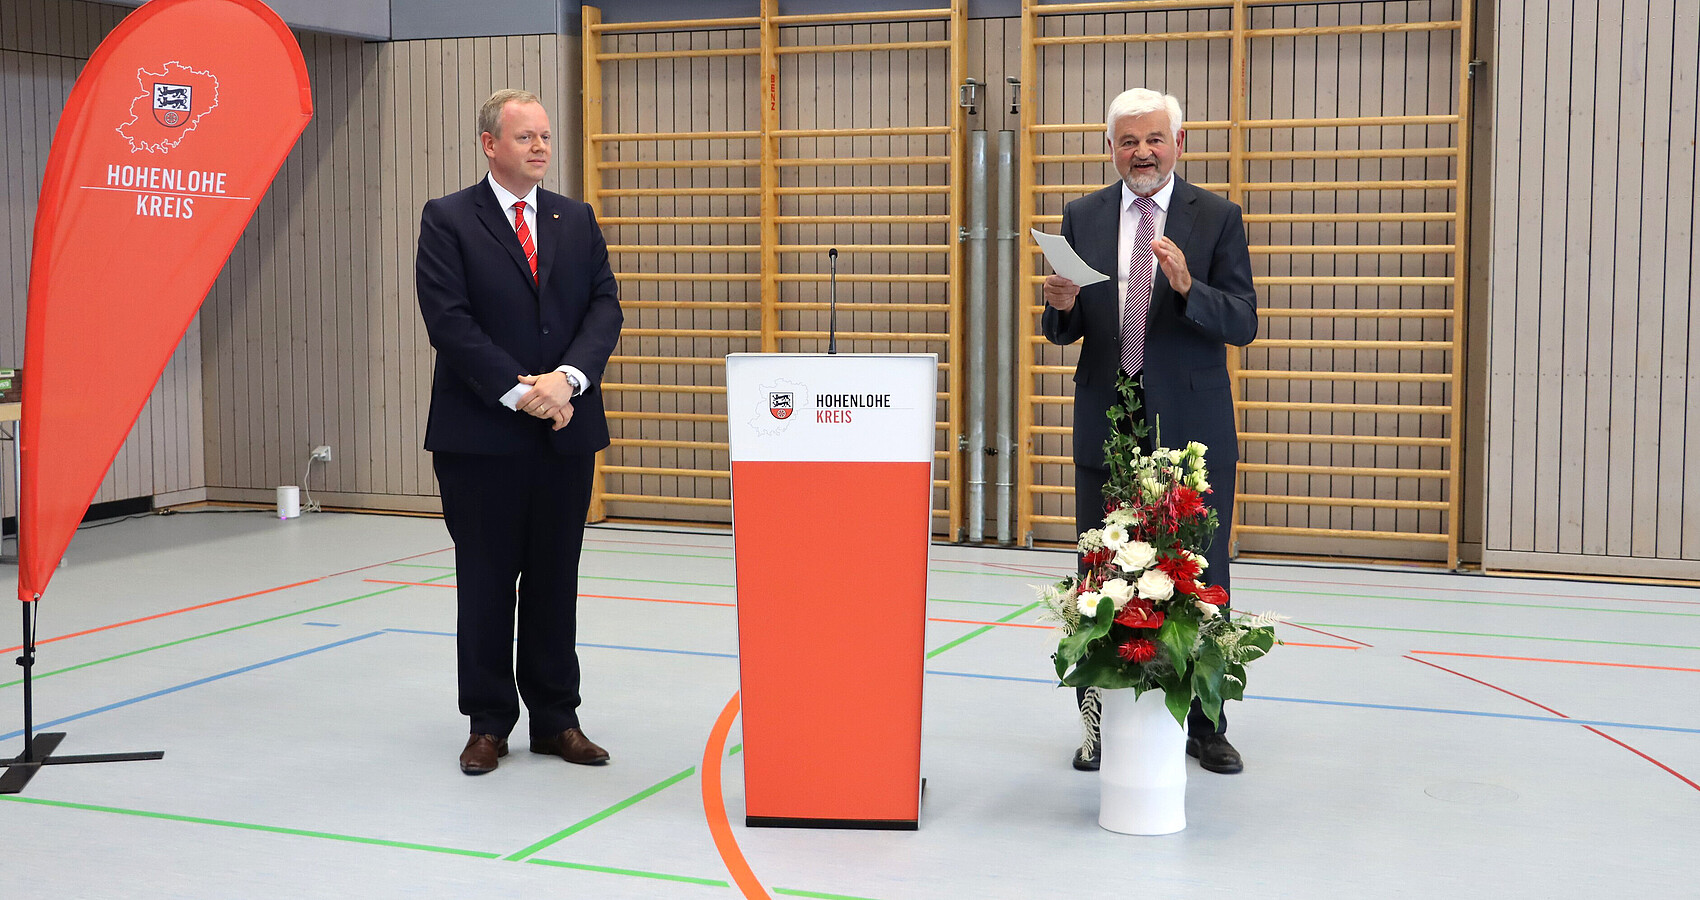 Regierungspräsident Wolfgang Reimer (rechts) und Landrat Dr. Matthias Neth (links) bei der Verpflichtung für eine weitere Amtszeit